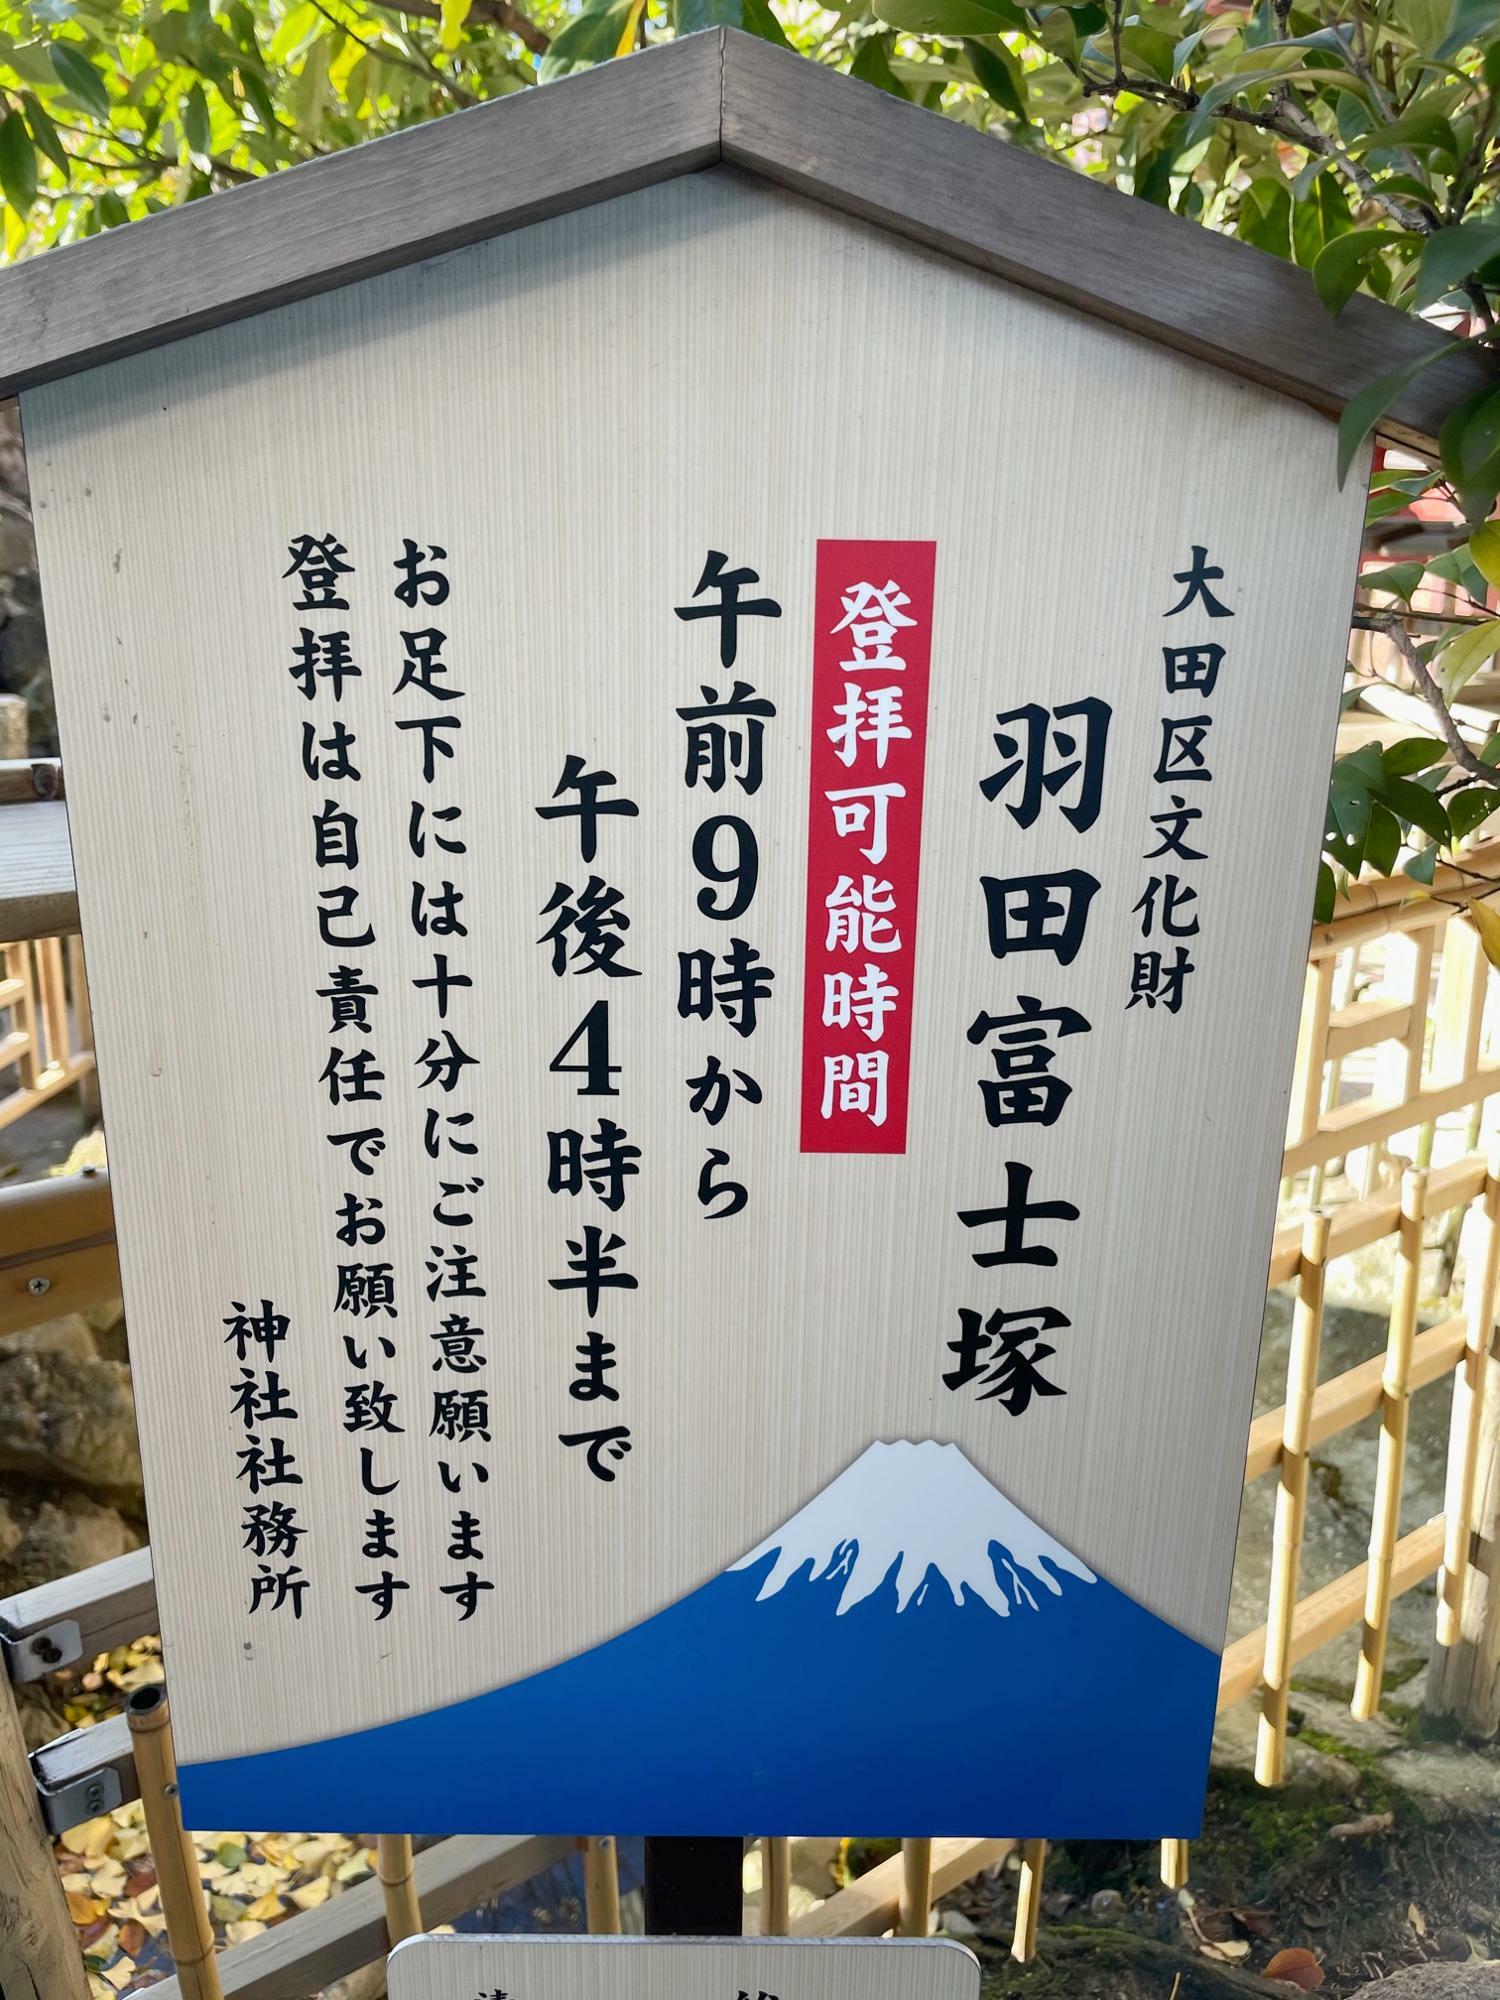 自己責任で富士山頂を目指します